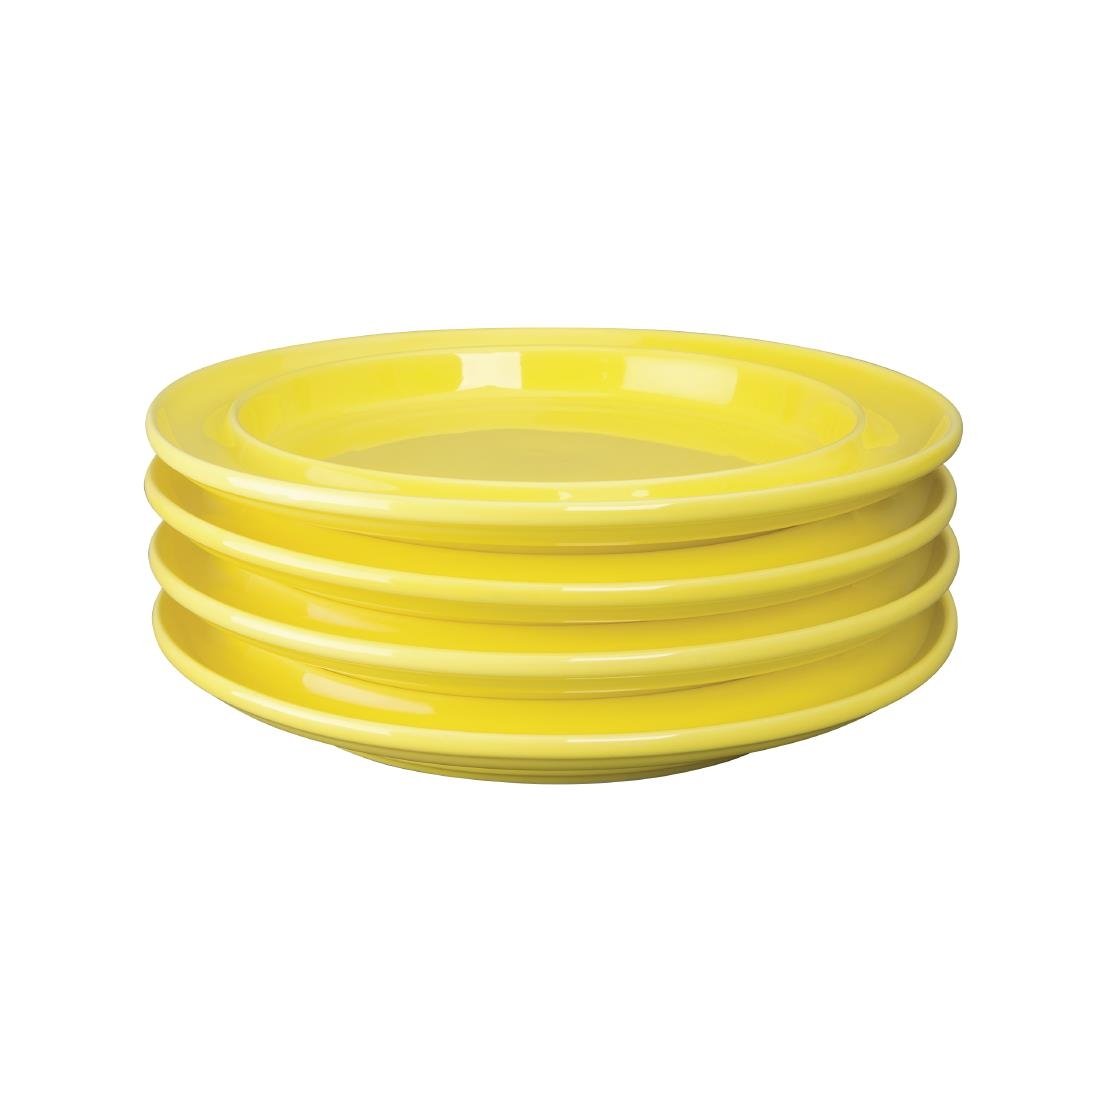 Olympia Heritage borden geel 253 mm (4 stuks)